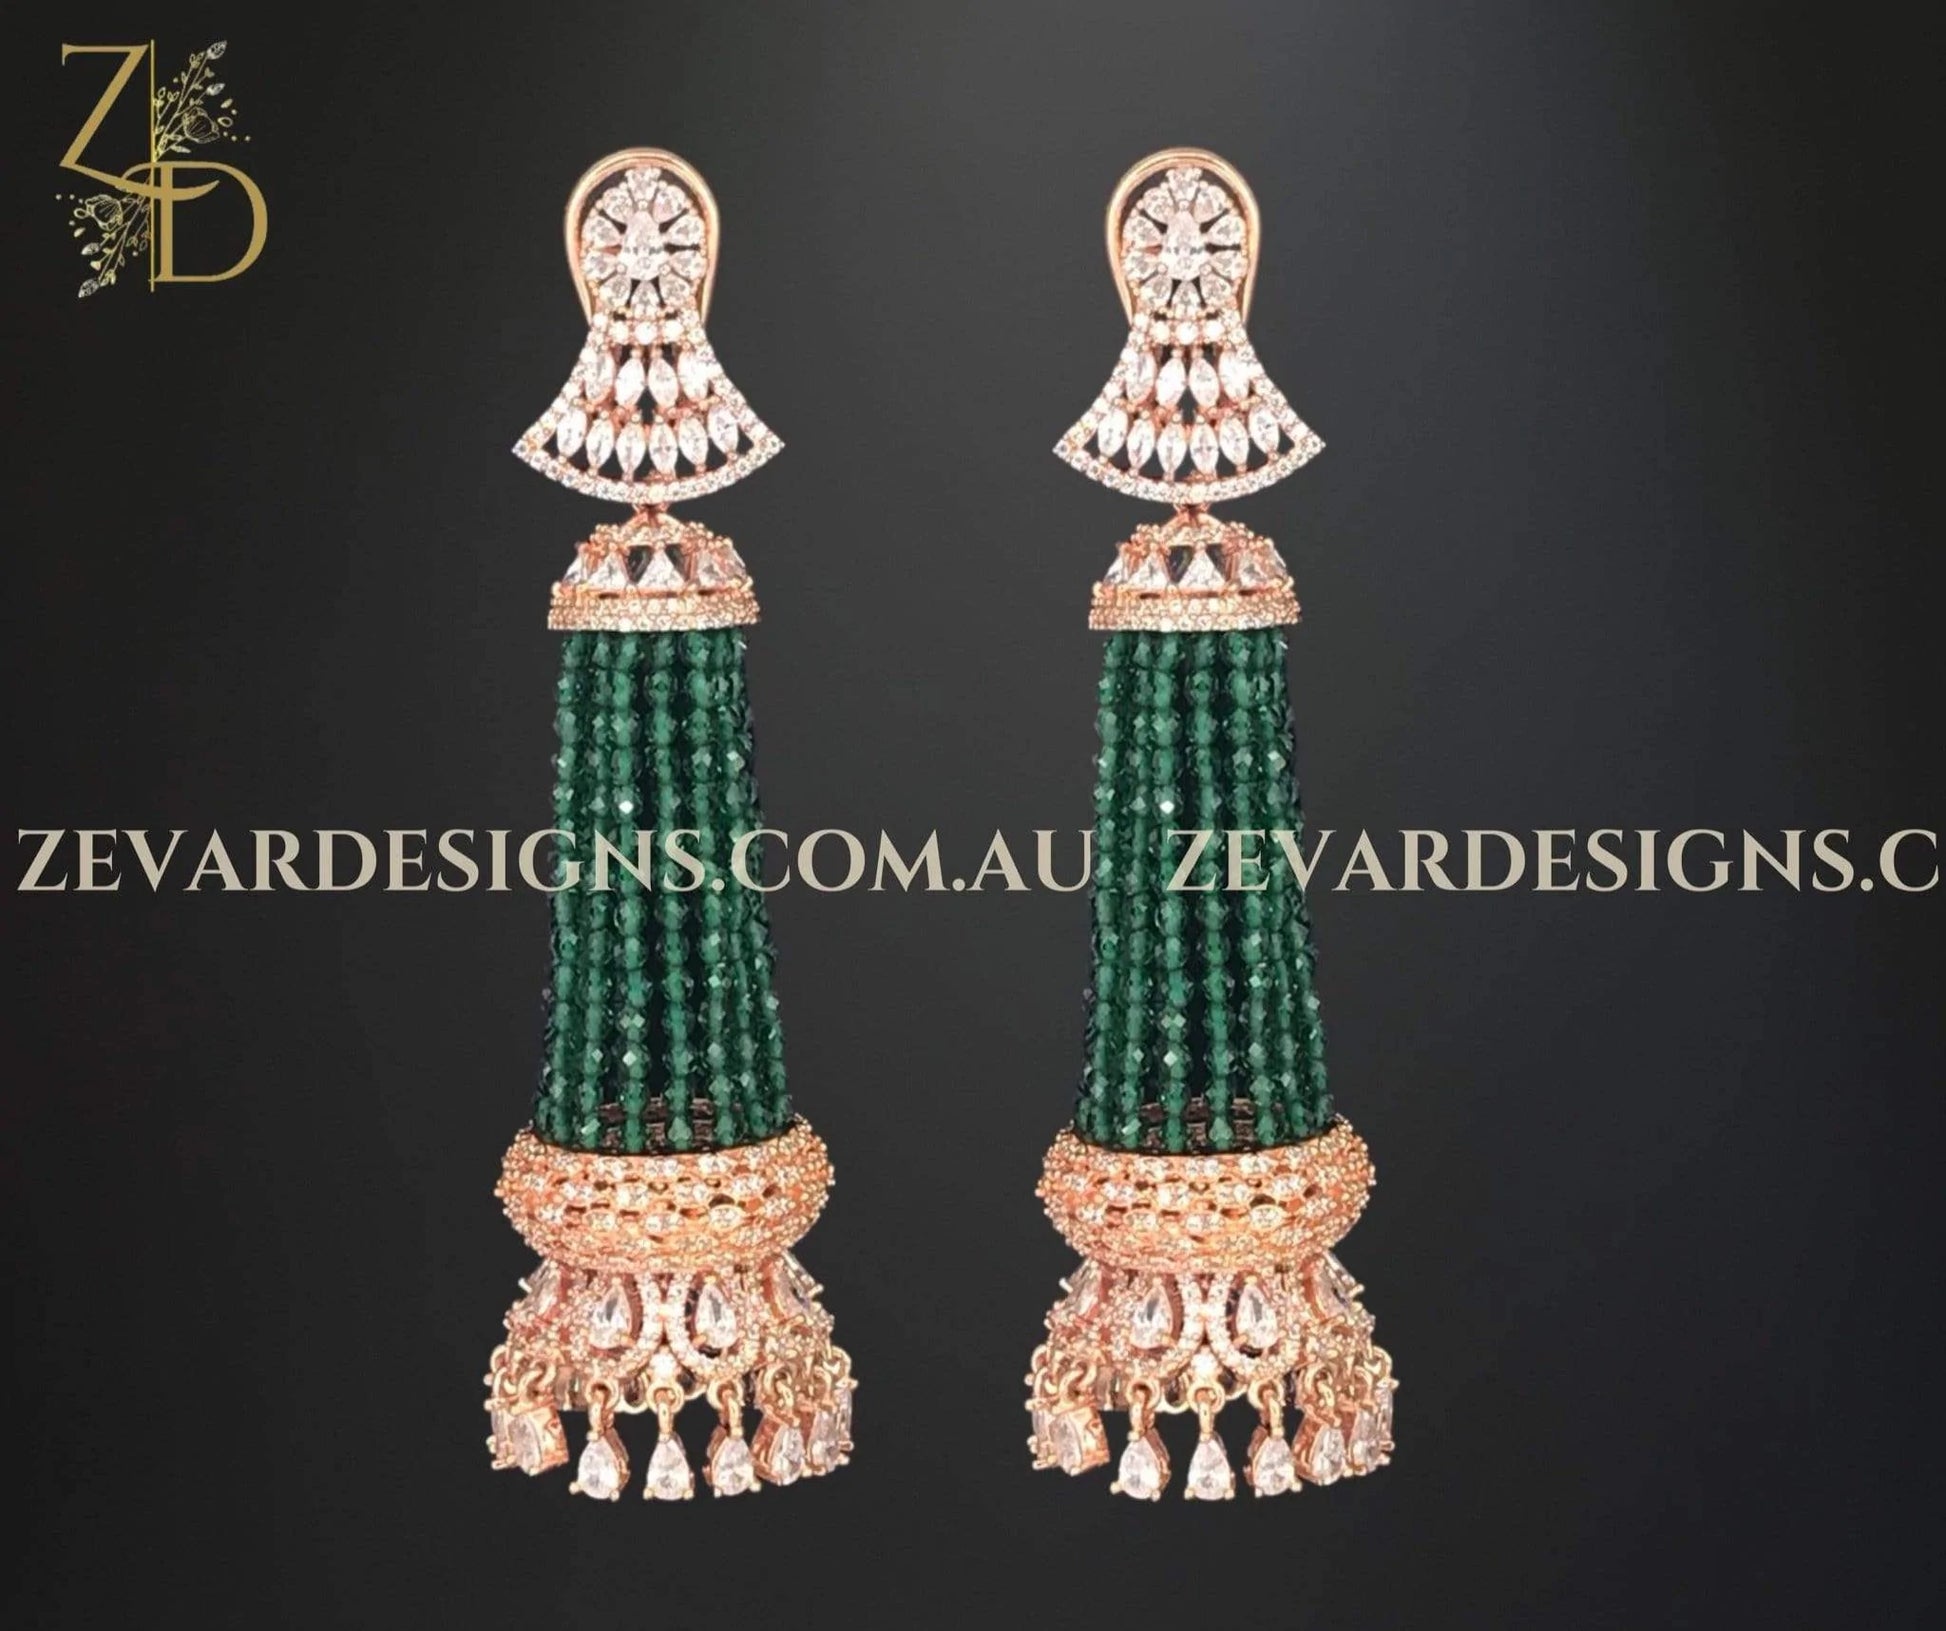 Zevar Designs Zircon Earrings Chandelier Earrings - Emerald Green and Gold